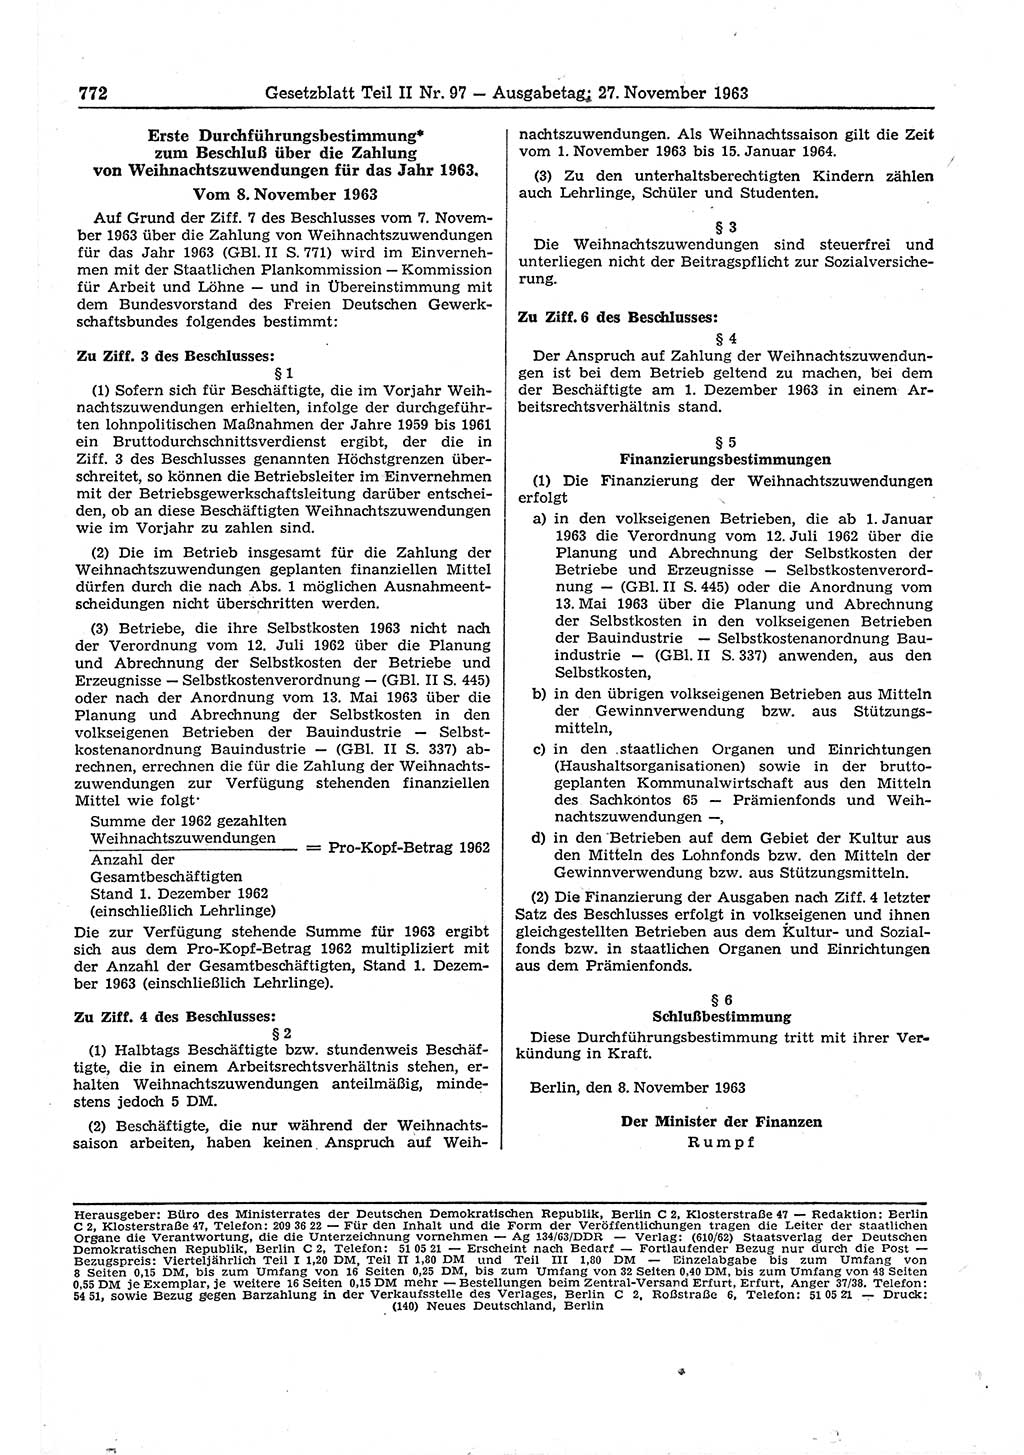 Gesetzblatt (GBl.) der Deutschen Demokratischen Republik (DDR) Teil ⅠⅠ 1963, Seite 772 (GBl. DDR ⅠⅠ 1963, S. 772)